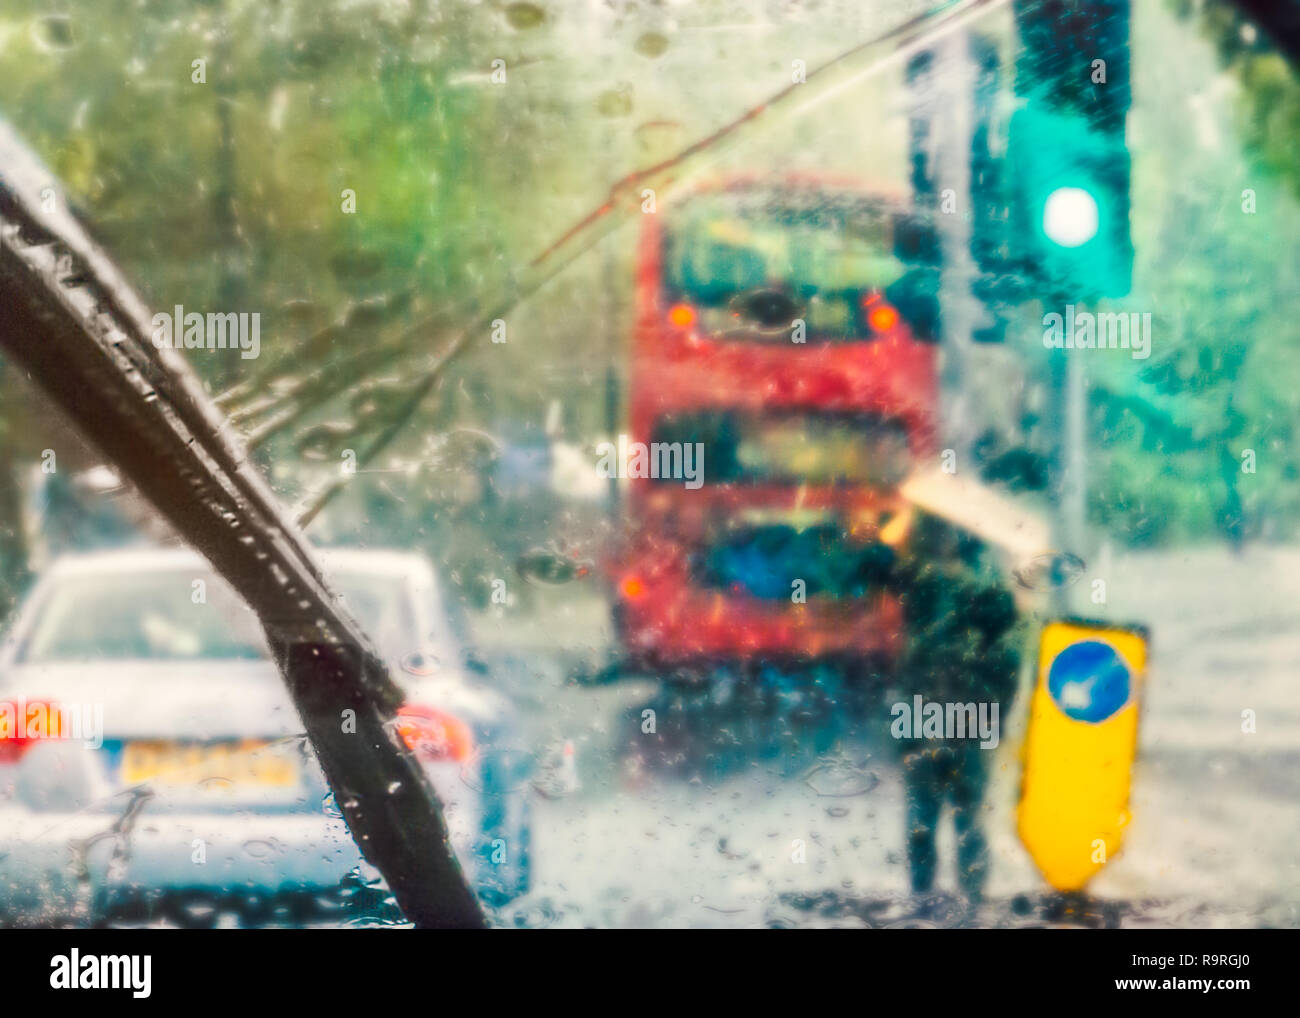 London street scene sottratto dalla pioggia su di un parabrezza di automobile in un giorno di pioggia. Un bus rosso può essere visto e un uomo con il cartone sopra la sua testa per shelte Foto Stock